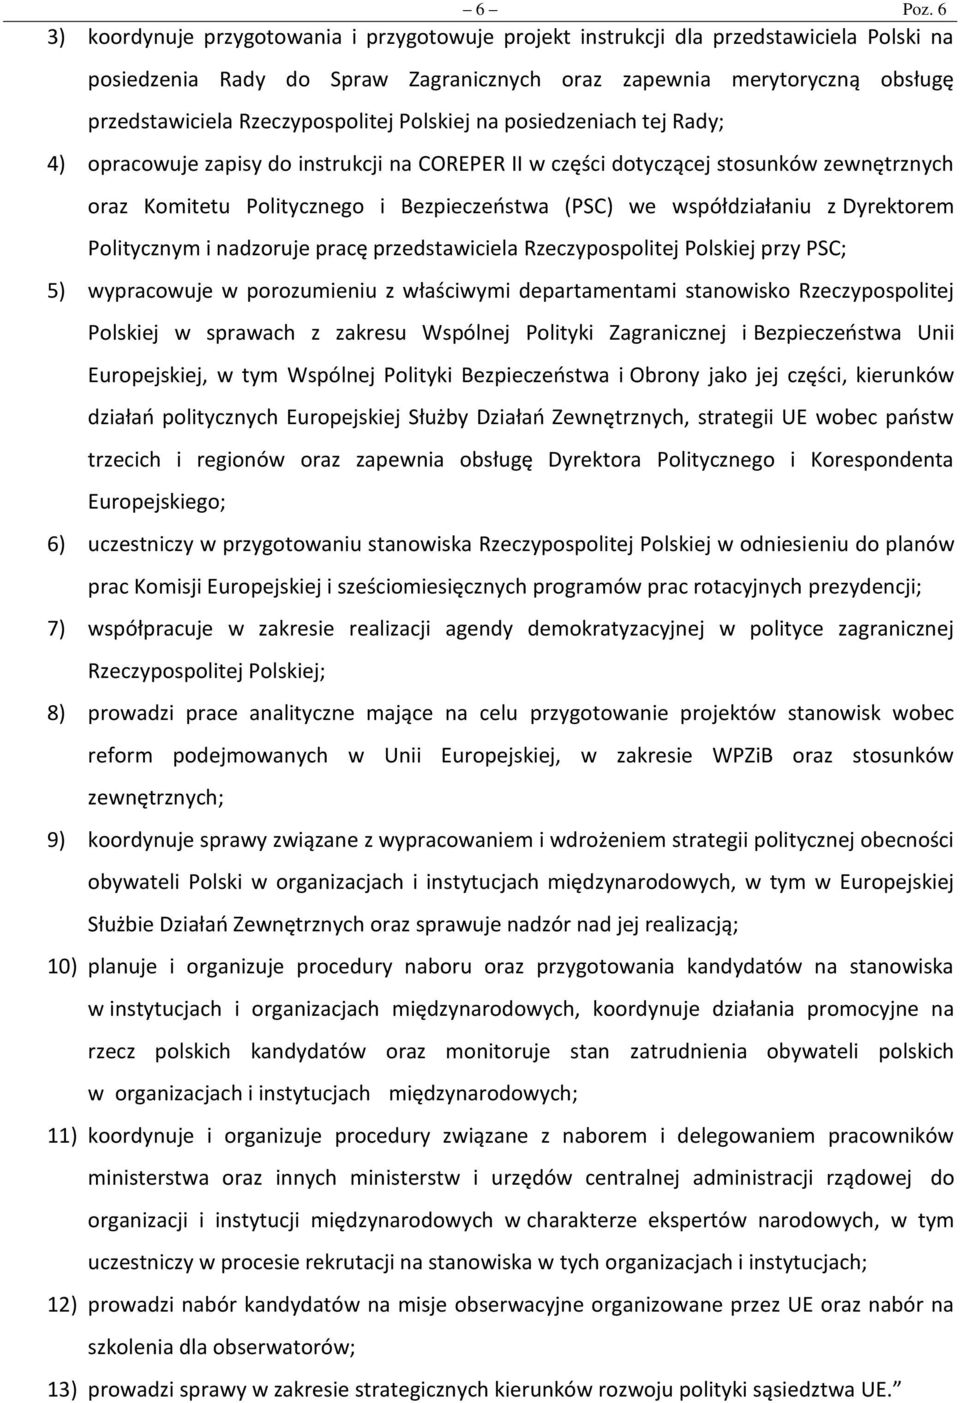 Rzeczypospolitej Polskiej na posiedzeniach tej Rady; 4) opracowuje zapisy do instrukcji na COREPER II w części dotyczącej stosunków zewnętrznych oraz Komitetu Politycznego i Bezpieczeństwa (PSC) we